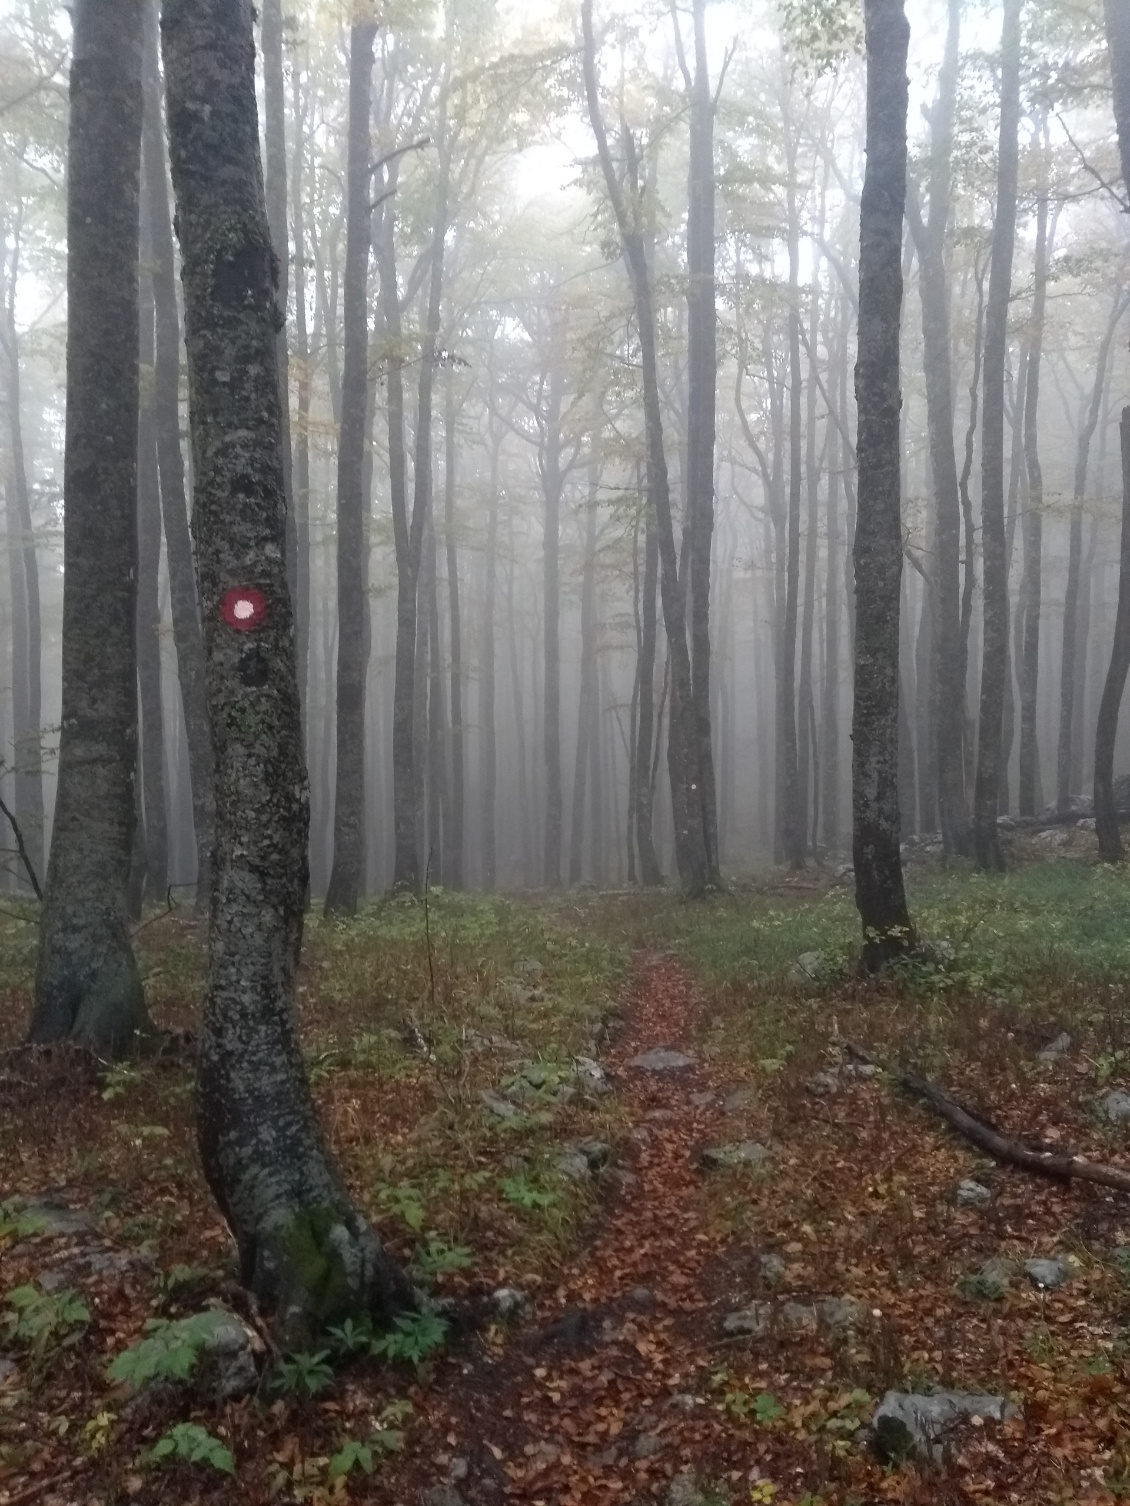 Les hêtres composent la majorité des forêts de Croatie ; avec le brouillard, l’ambiance est au rendez-vous.
Photo : Thomas Seramour